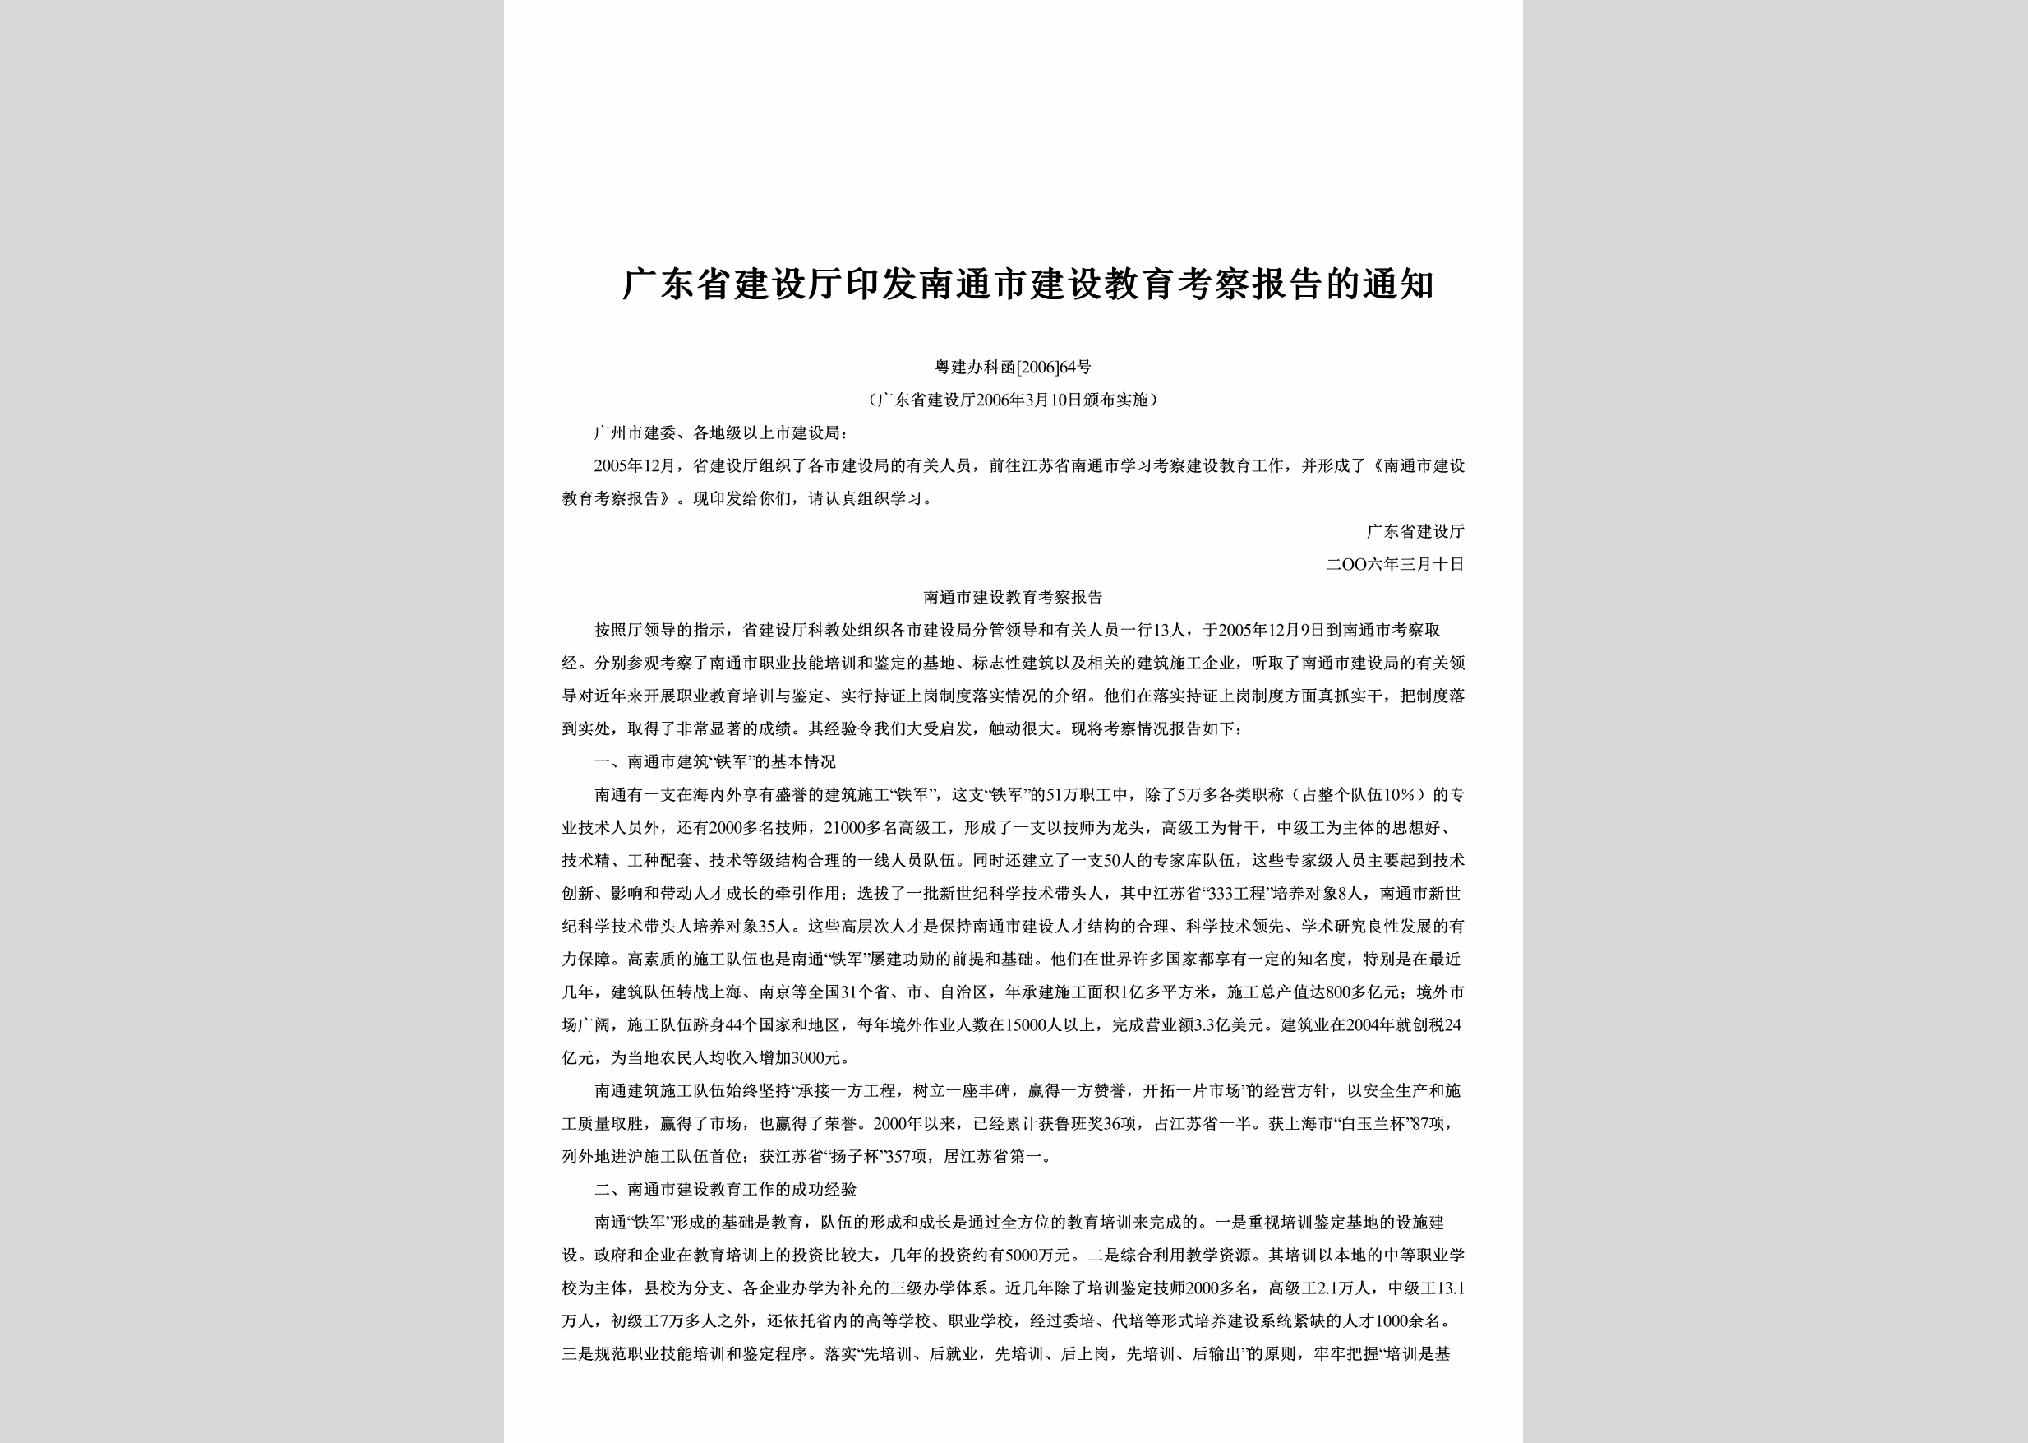 粤建办科函[2006]64号：印发南通市建设教育考察报告的通知